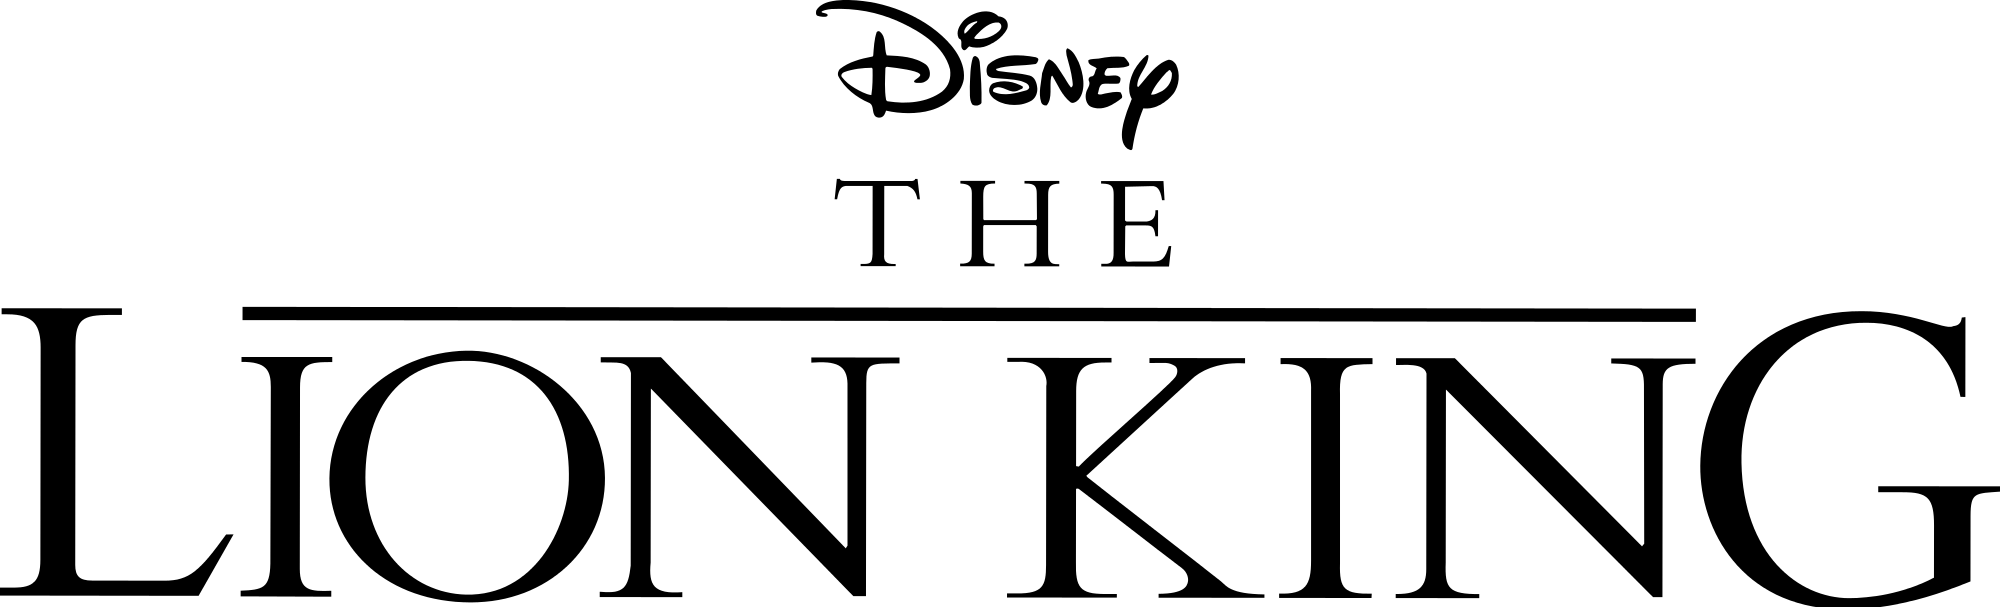 「ライオンキング」のロゴ